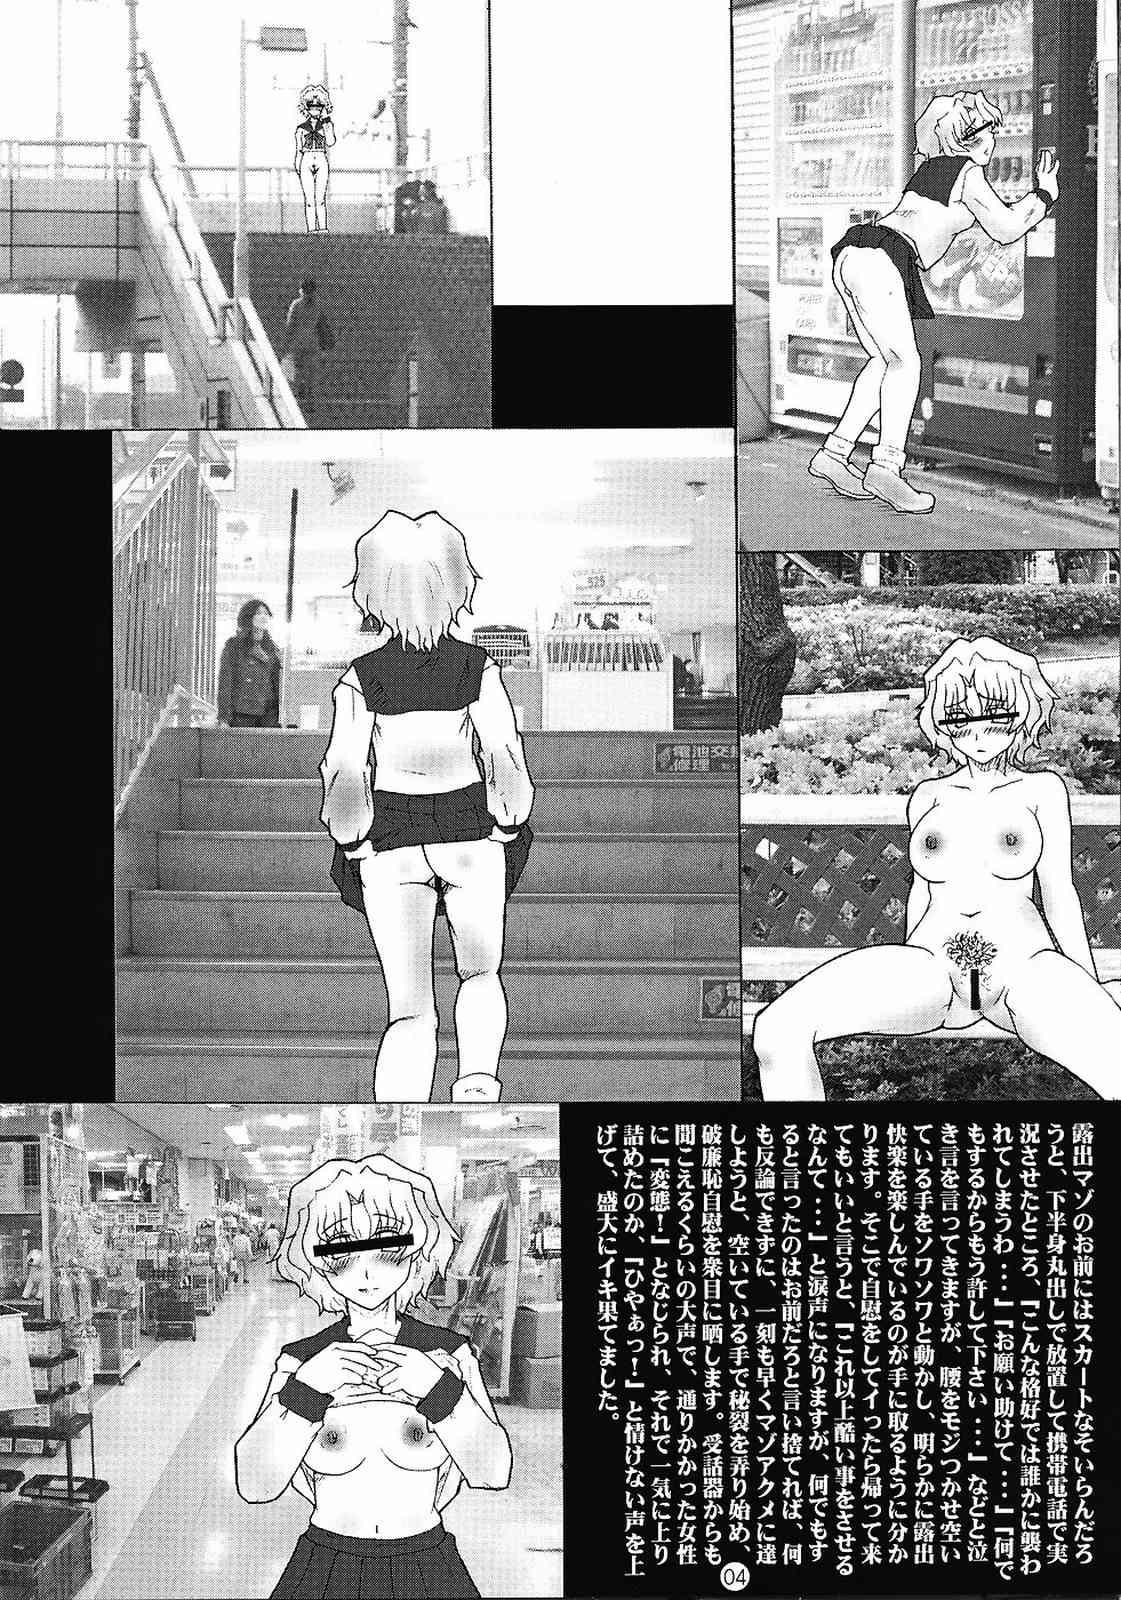 Stepsiblings Action Hakagijuku vol.0.5 - Toheart2 Shaved - Page 4